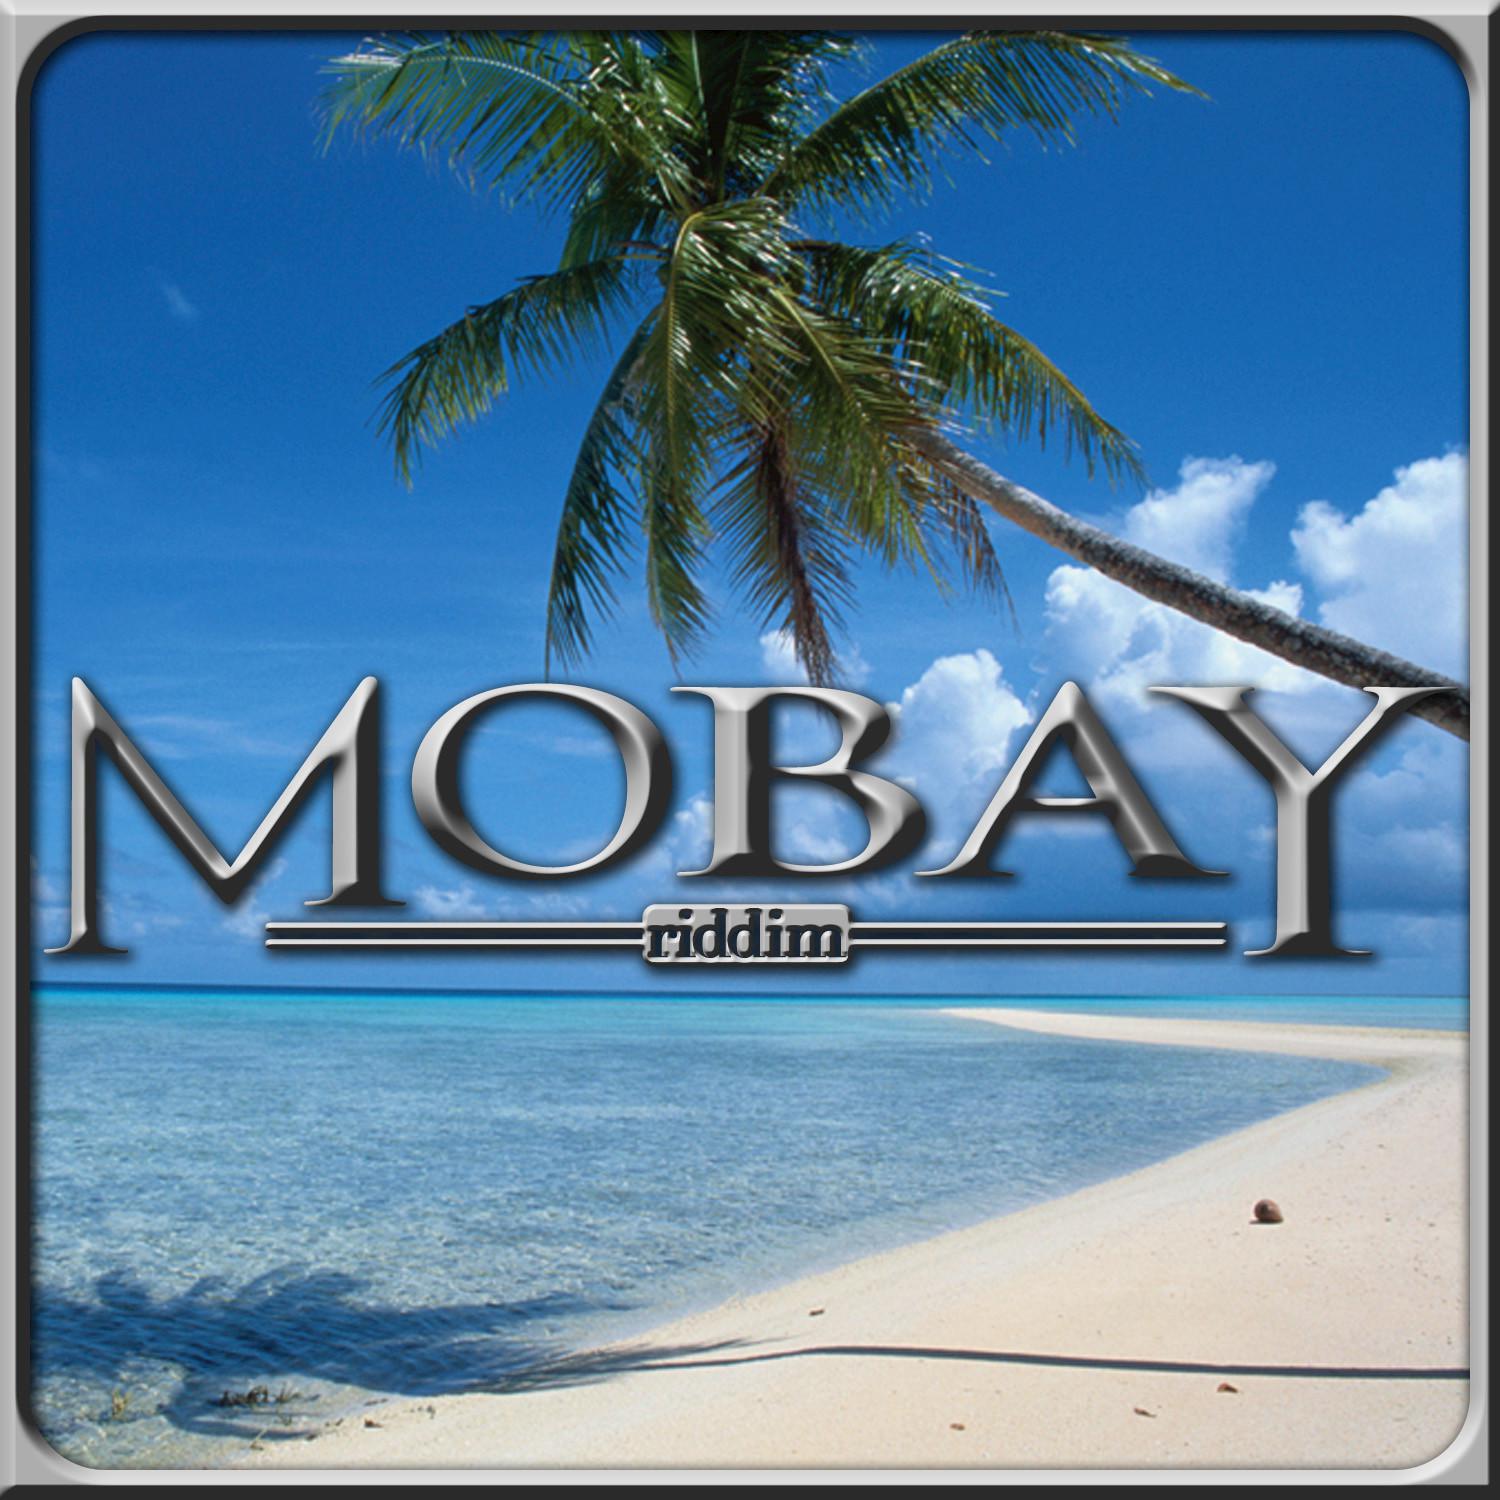 Mobay Riddim